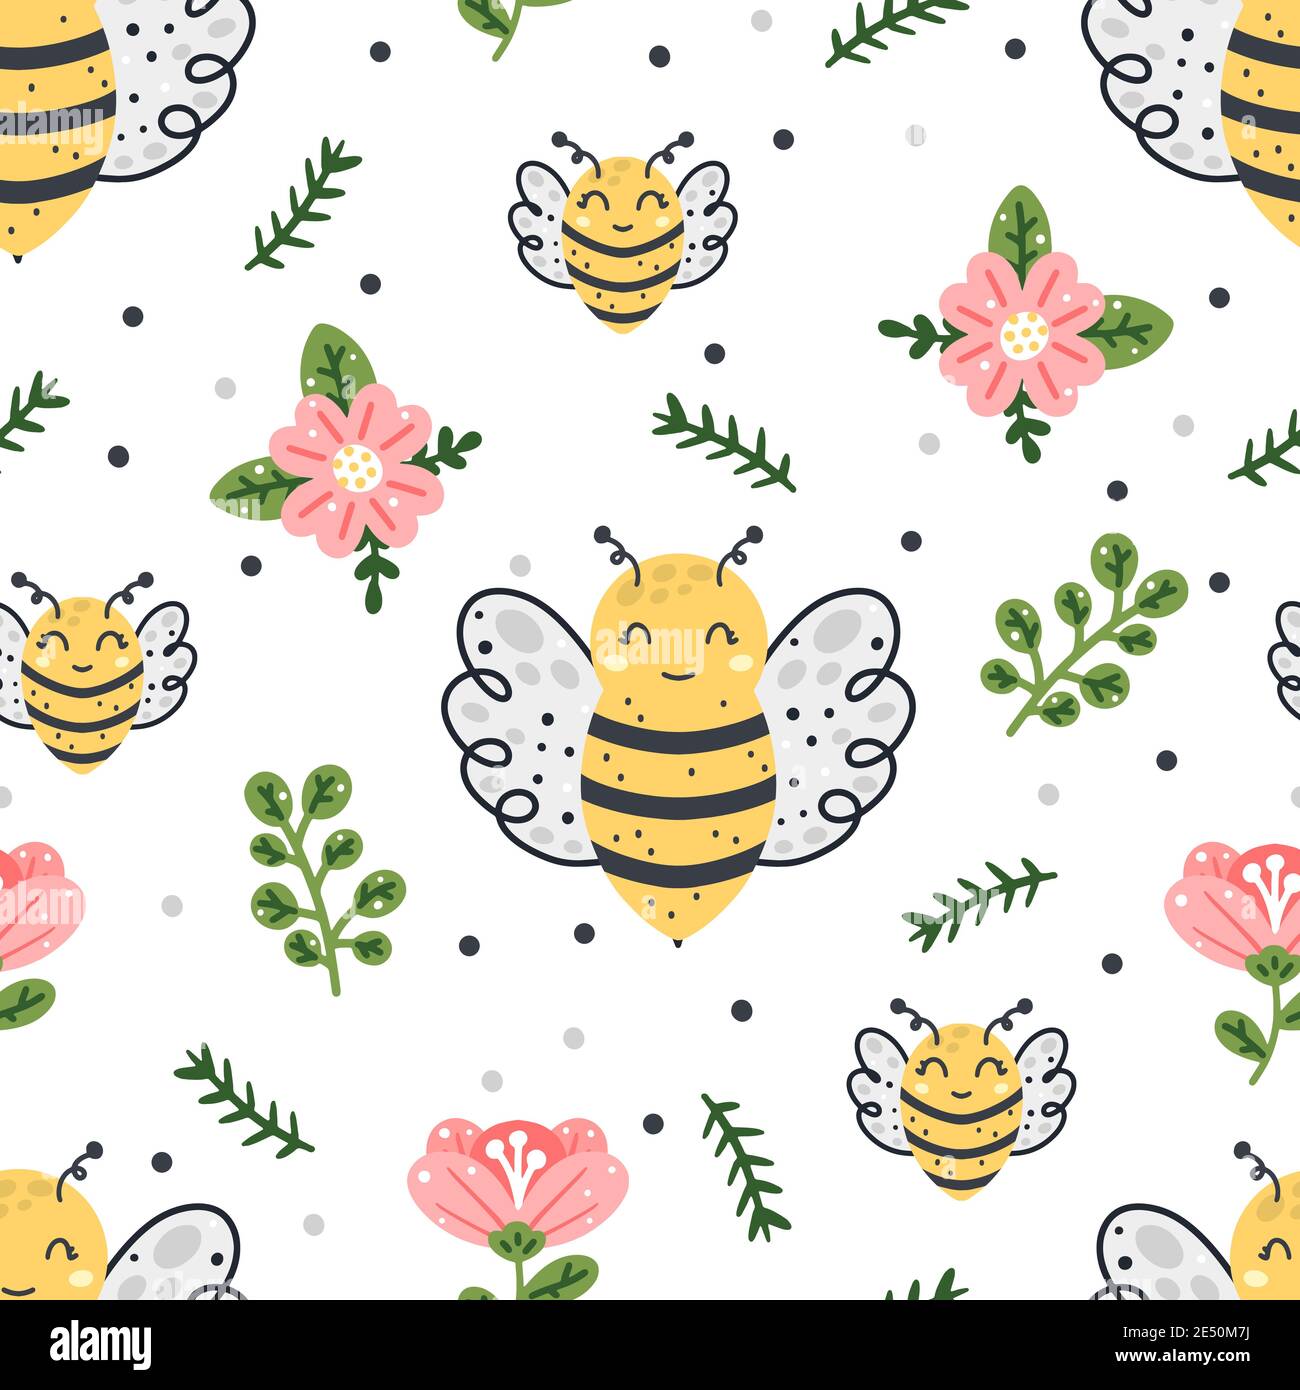 Niedliche Biene nahtlose Muster mit floralen Elementen und abstrakten Punkten isoliert auf weißem Hintergrund. Handgezeichnete Vektorgrafik im skandinavischen Stil. Stock Vektor